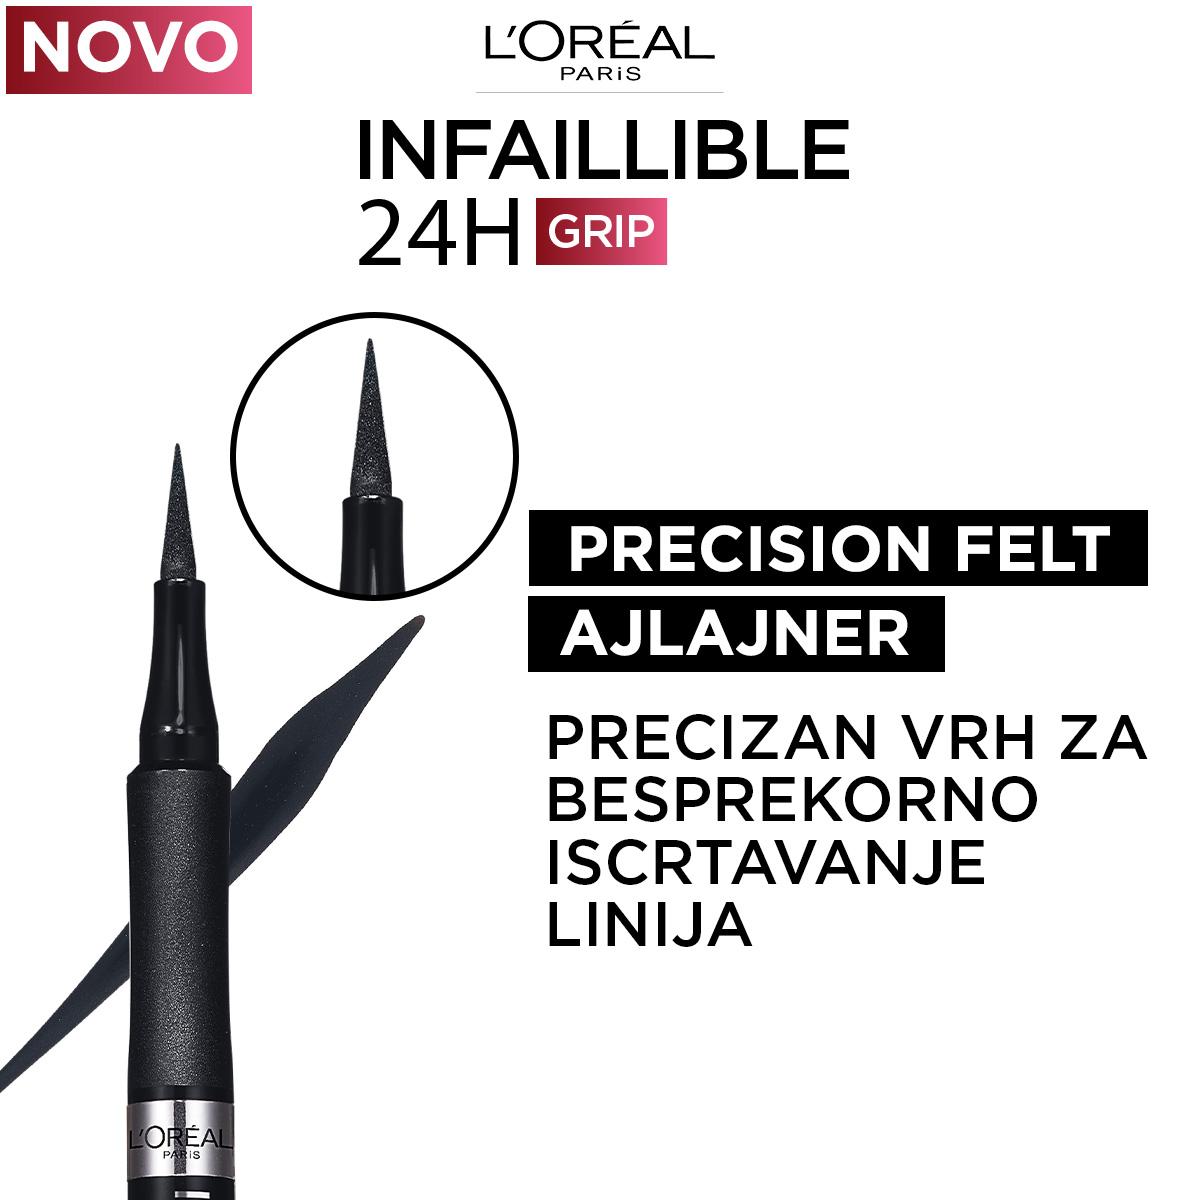 Selected image for L'OREAL PARIS Ajlajner Infaillible 24h Grip Precision Felt 01 Black